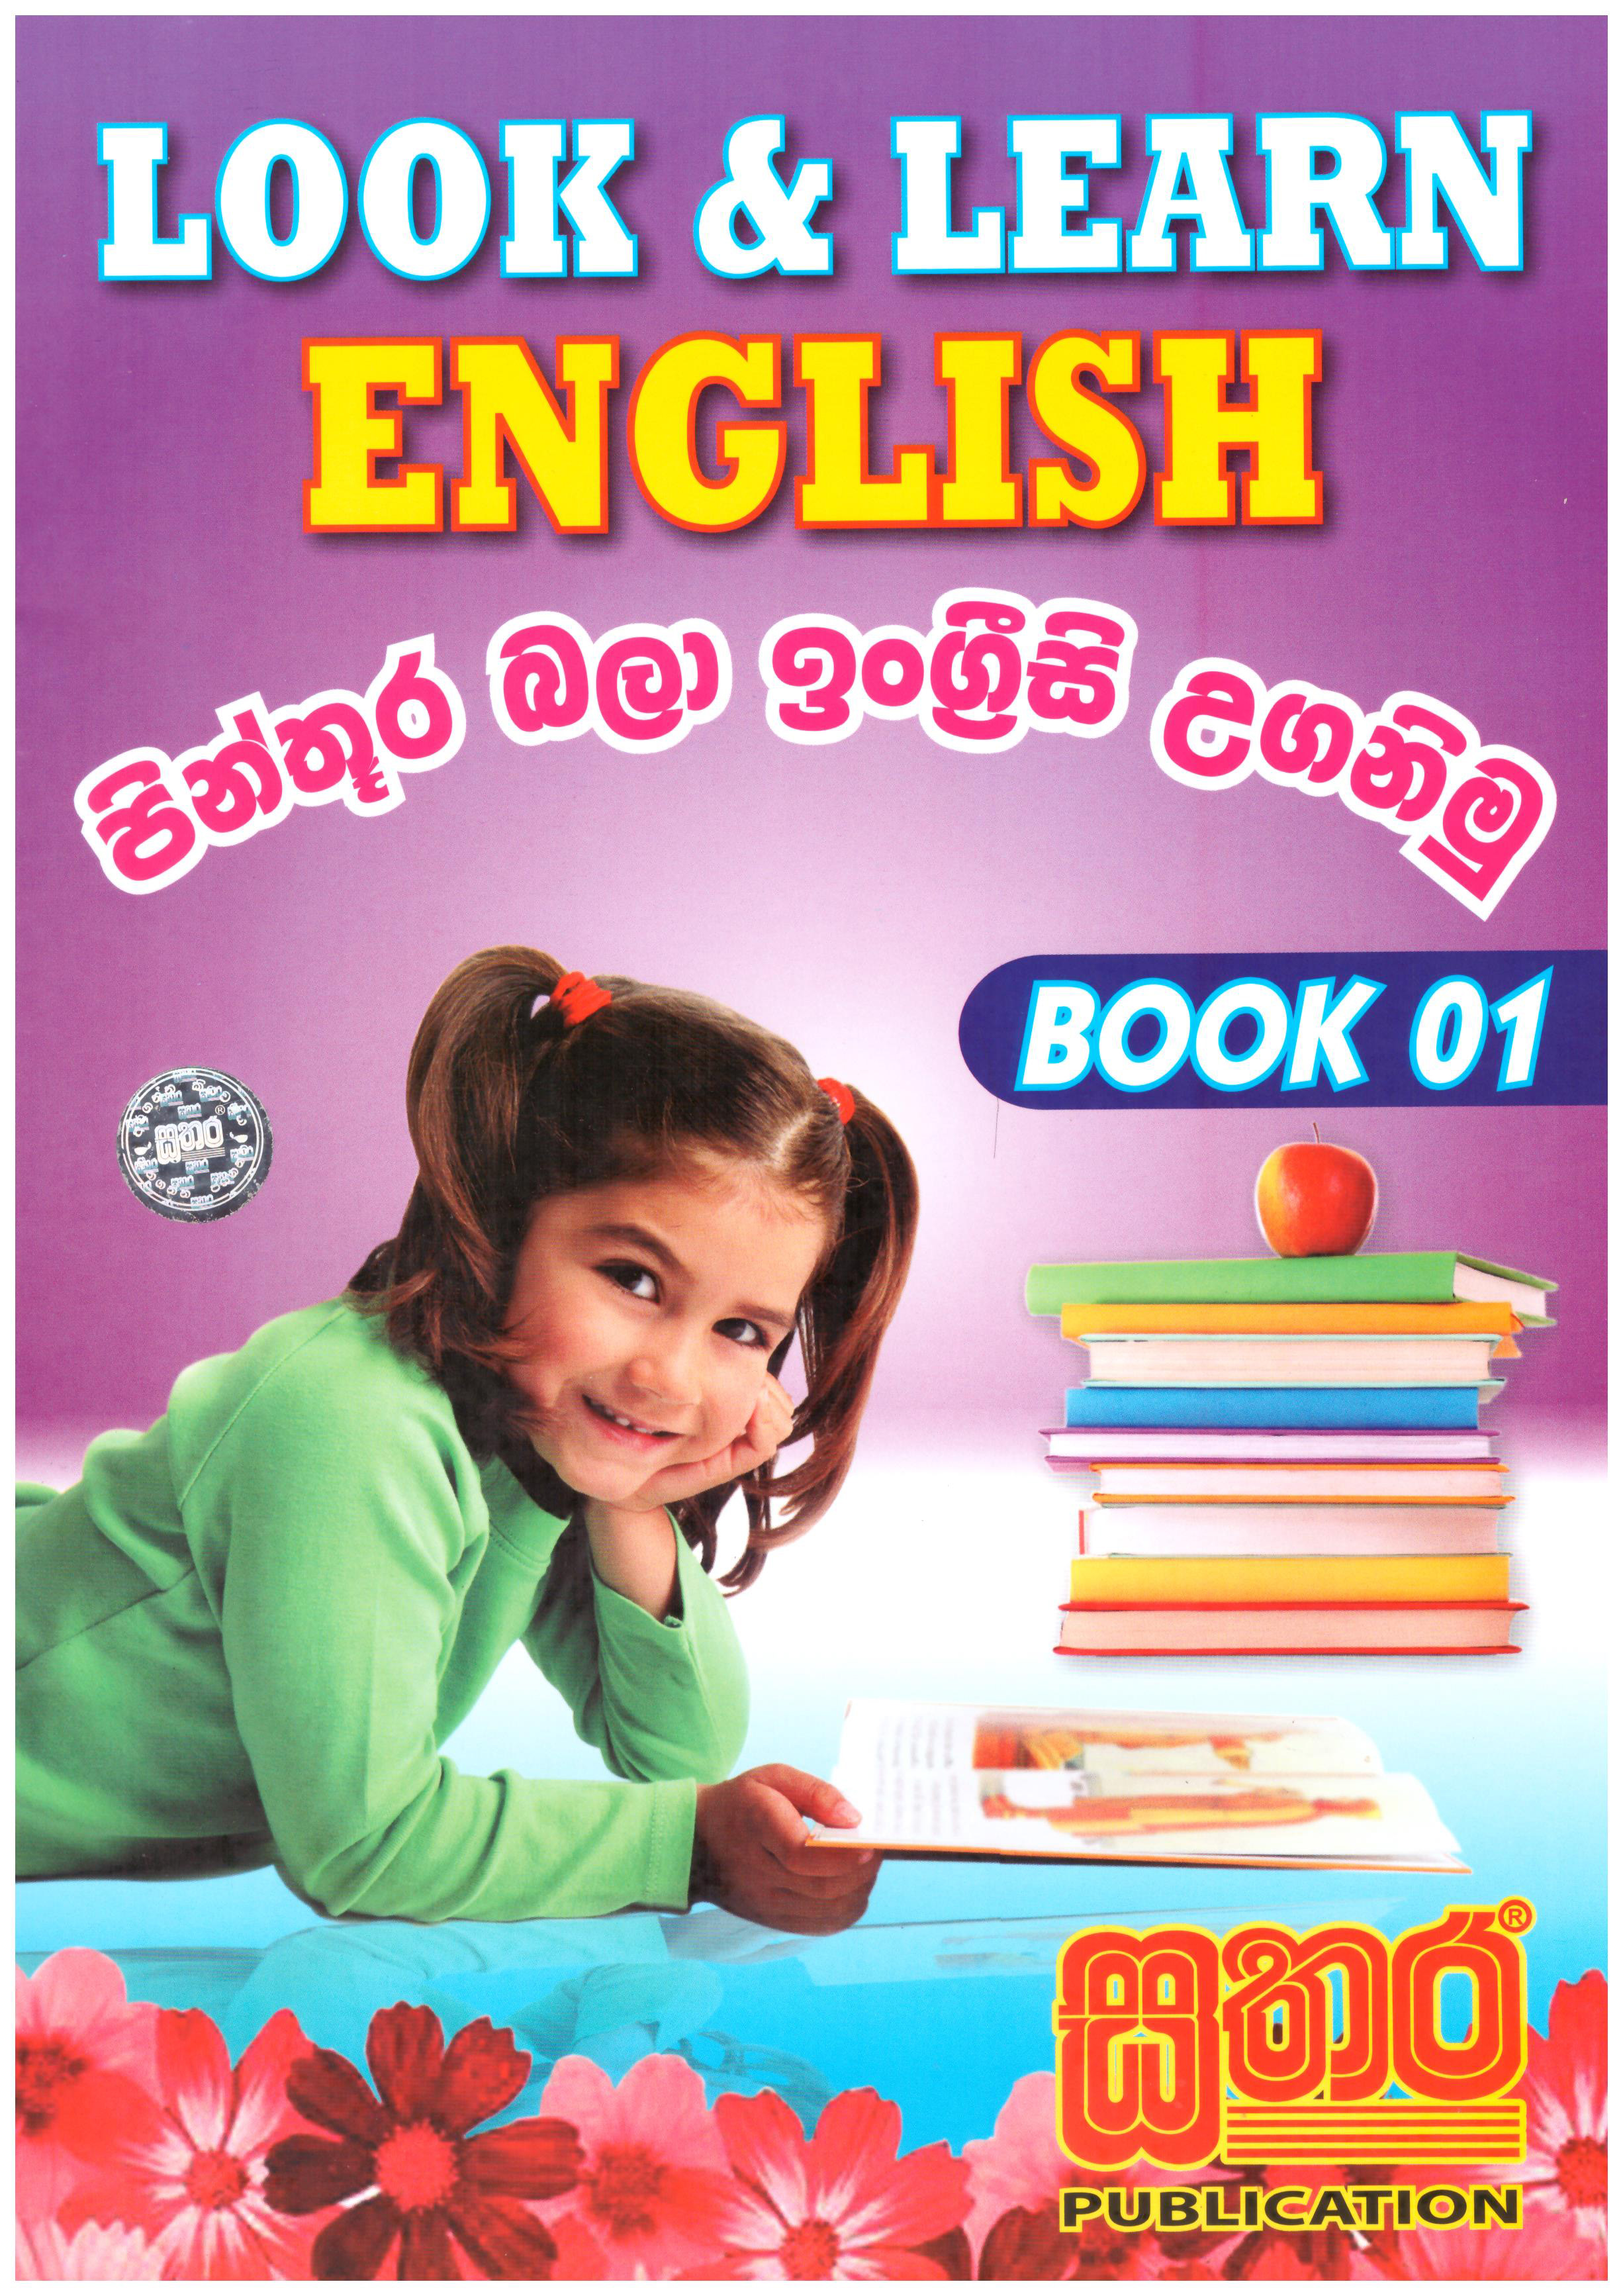 Look & Learn English Book 01